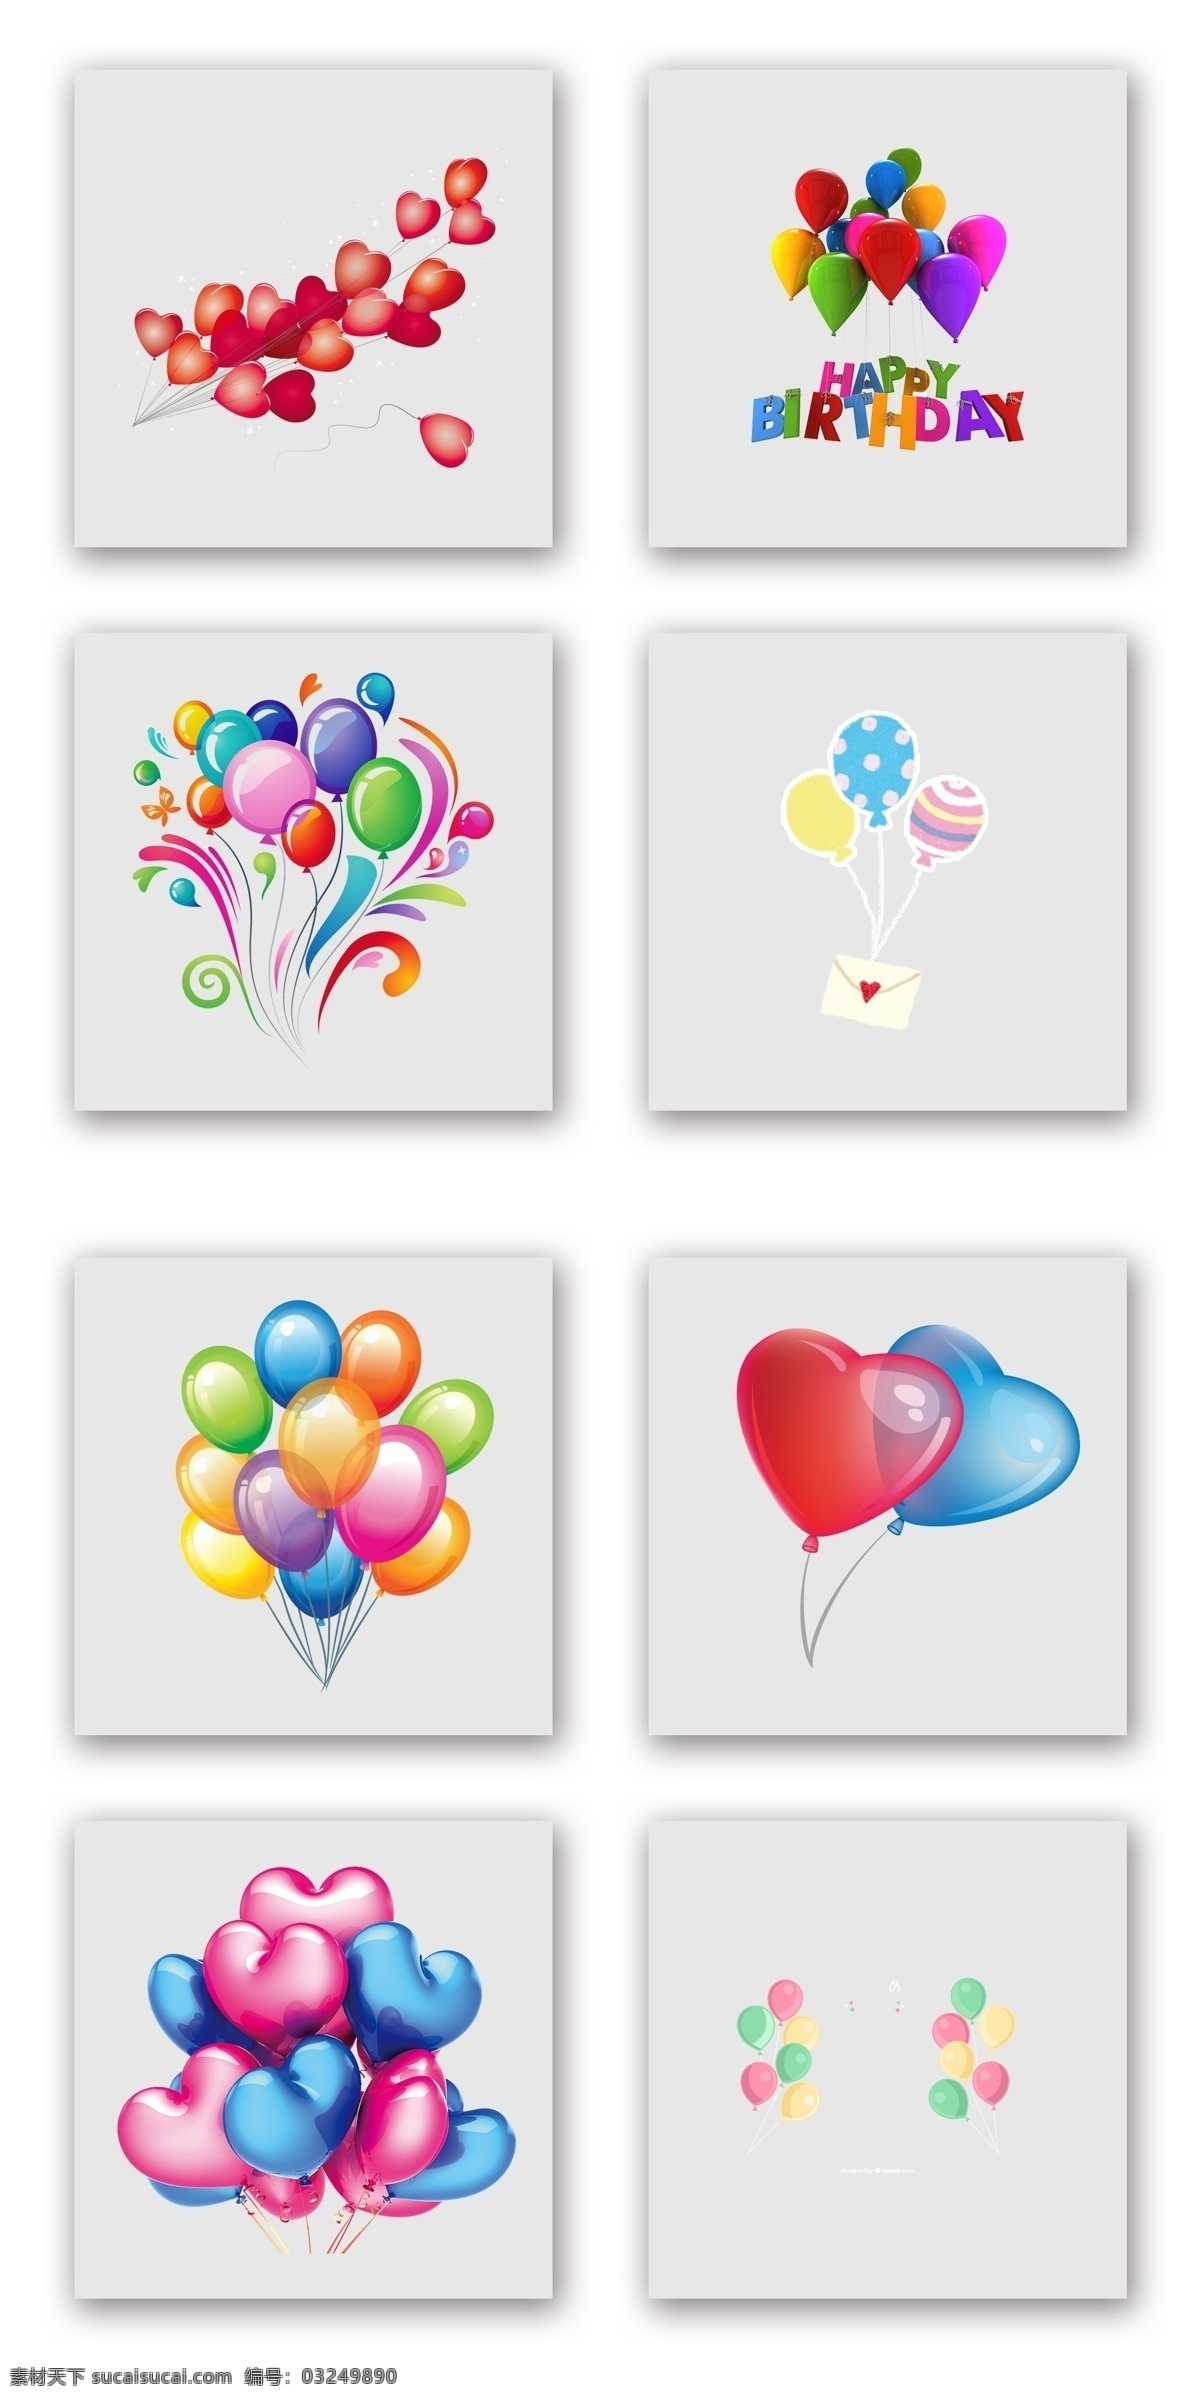 彩色 生 日心 型 气球 浪漫 背景 元素 生日 心型 五颜六色 漂浮素材 气球簇 节日氛围 礼物